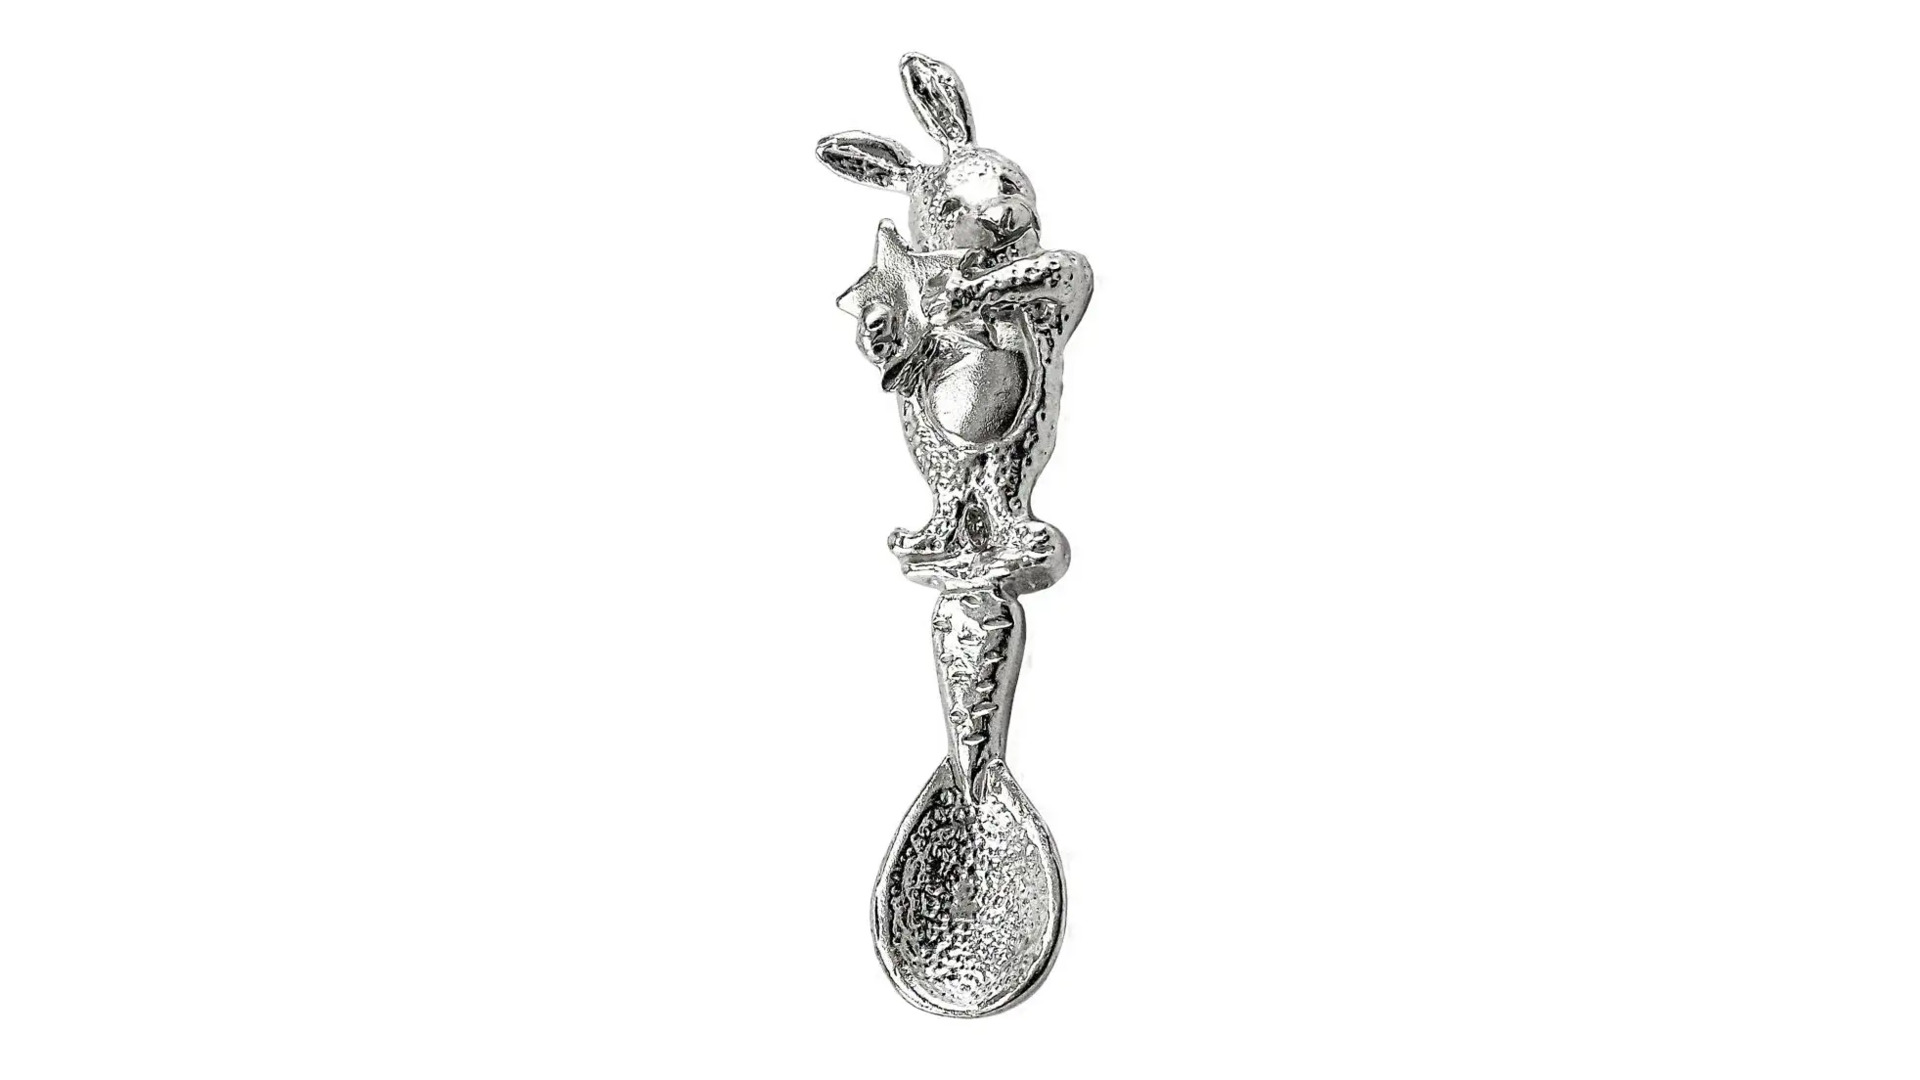 Ложка сувенирная АргентА Кролик 5,62 г, серебро 925